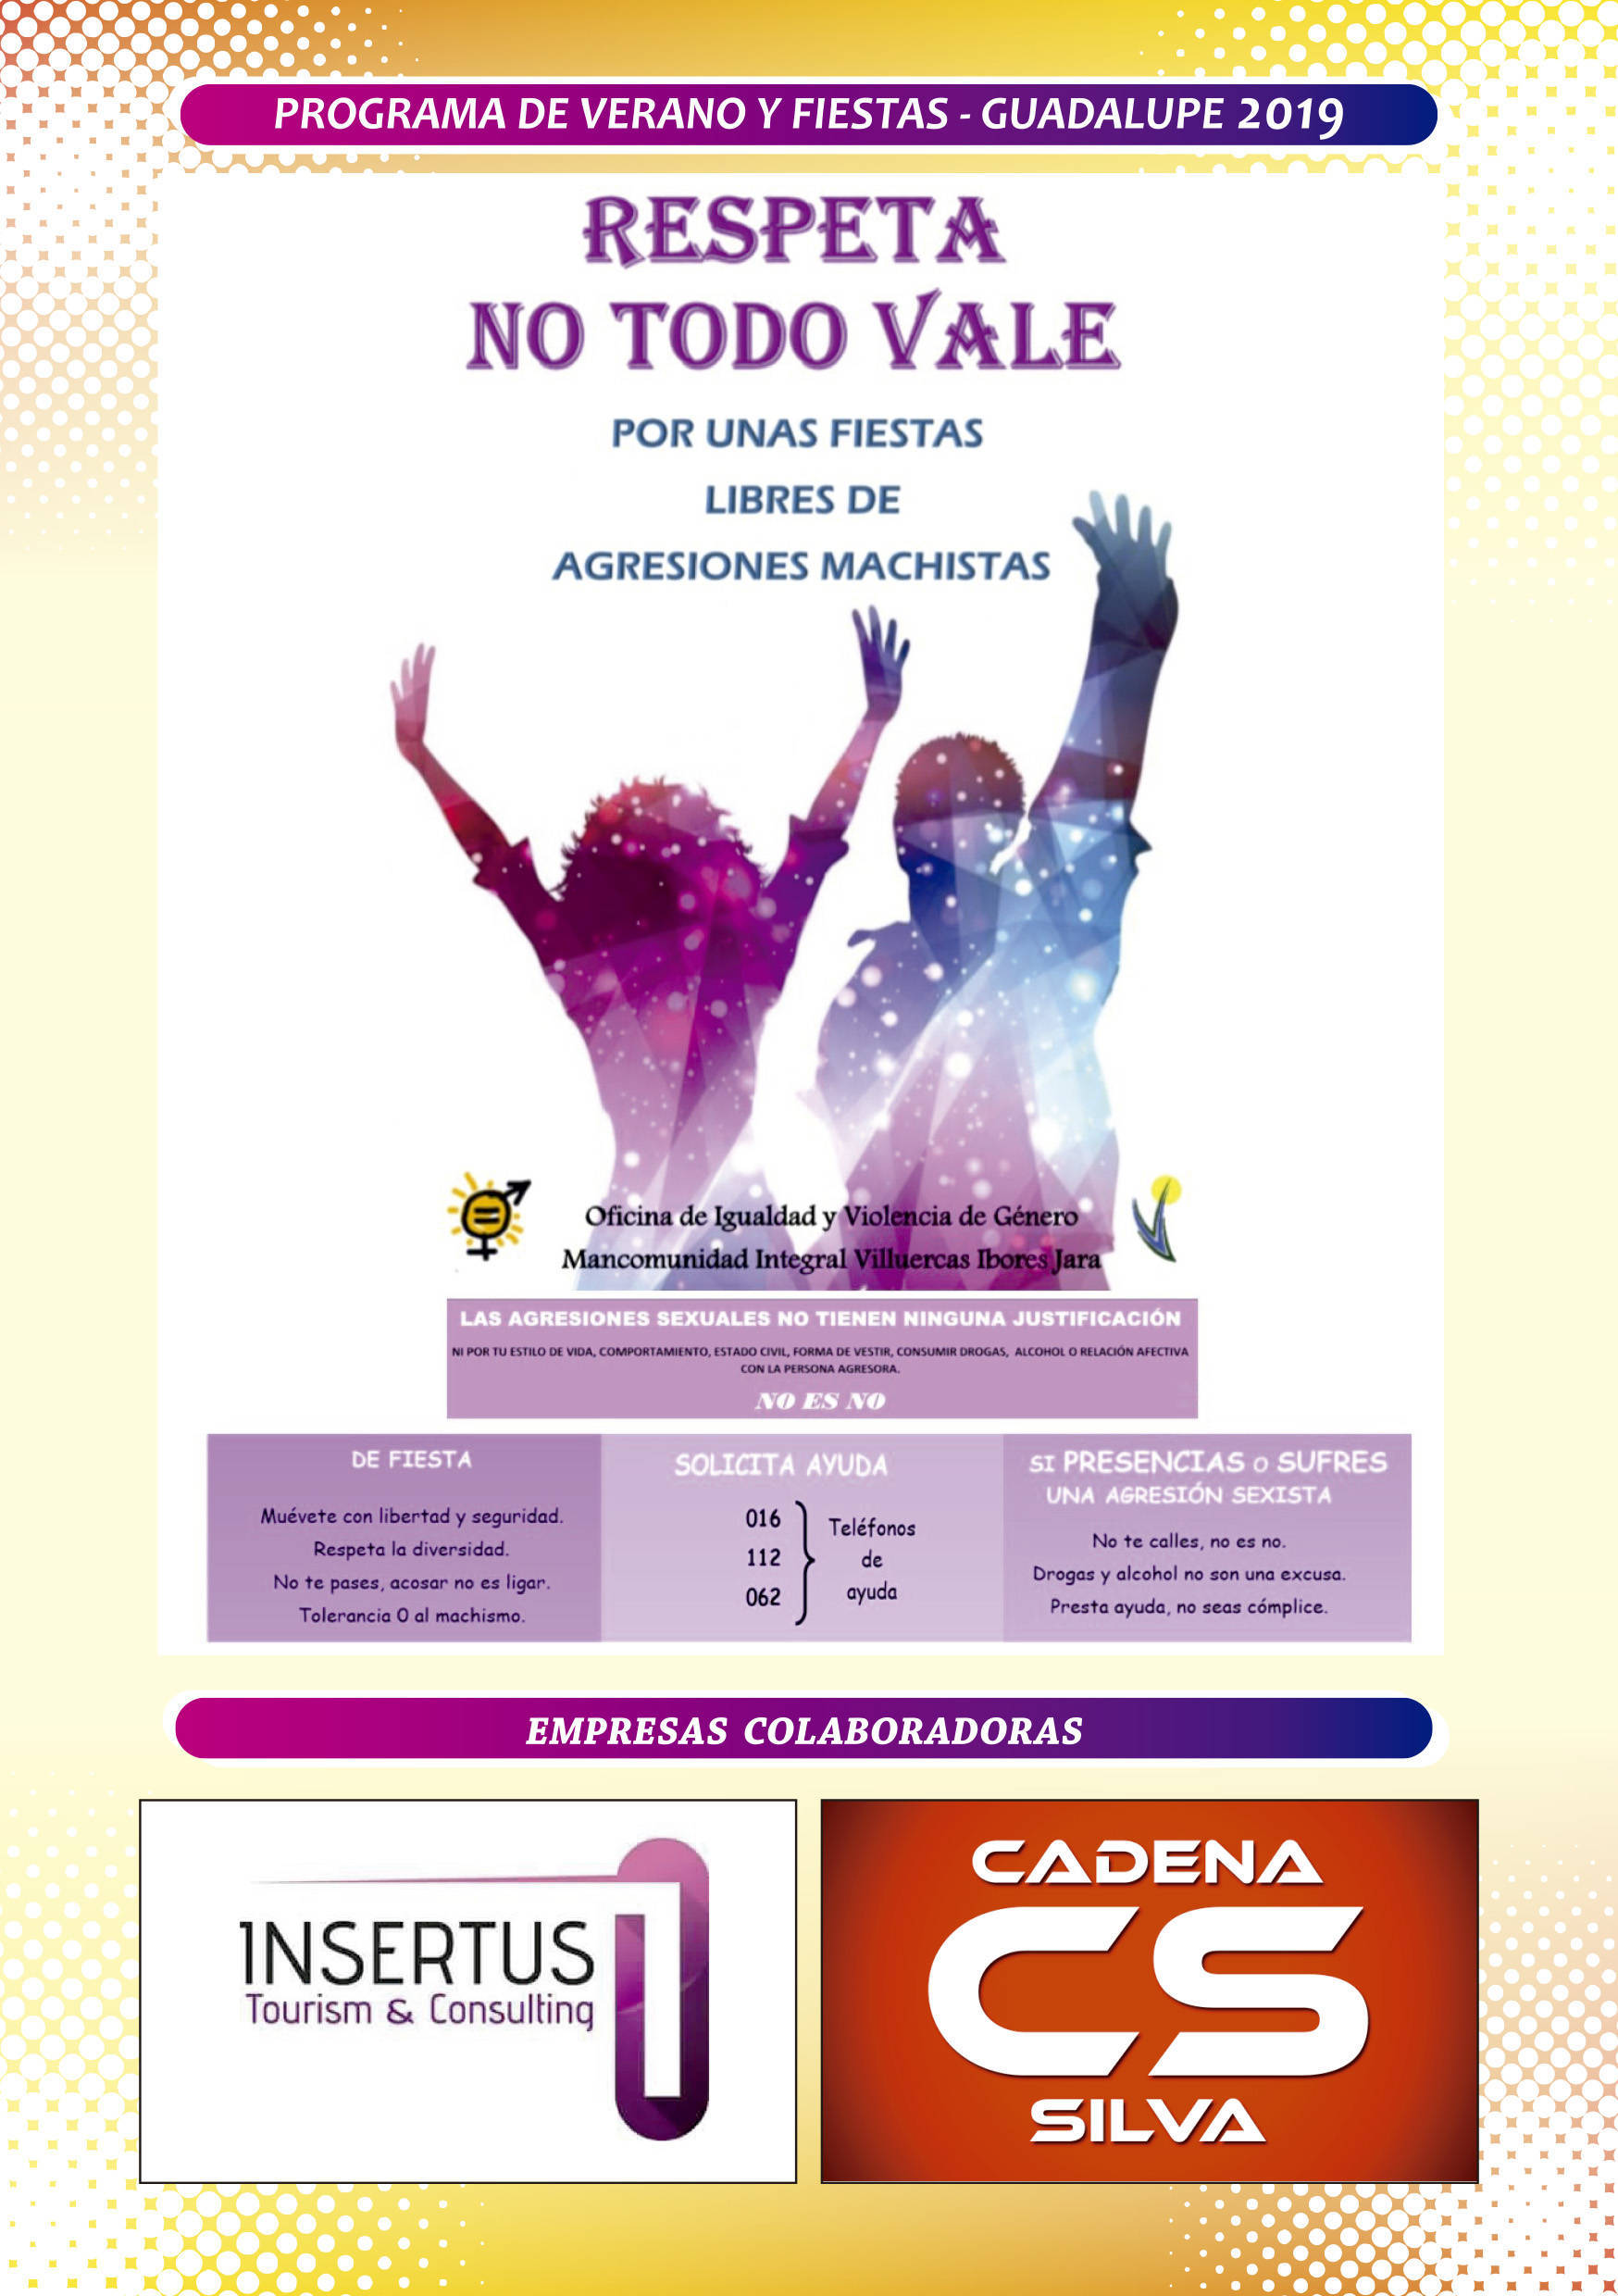 Programa de verano y fiestas 2019 - Guadalupe (Cáceres) 14